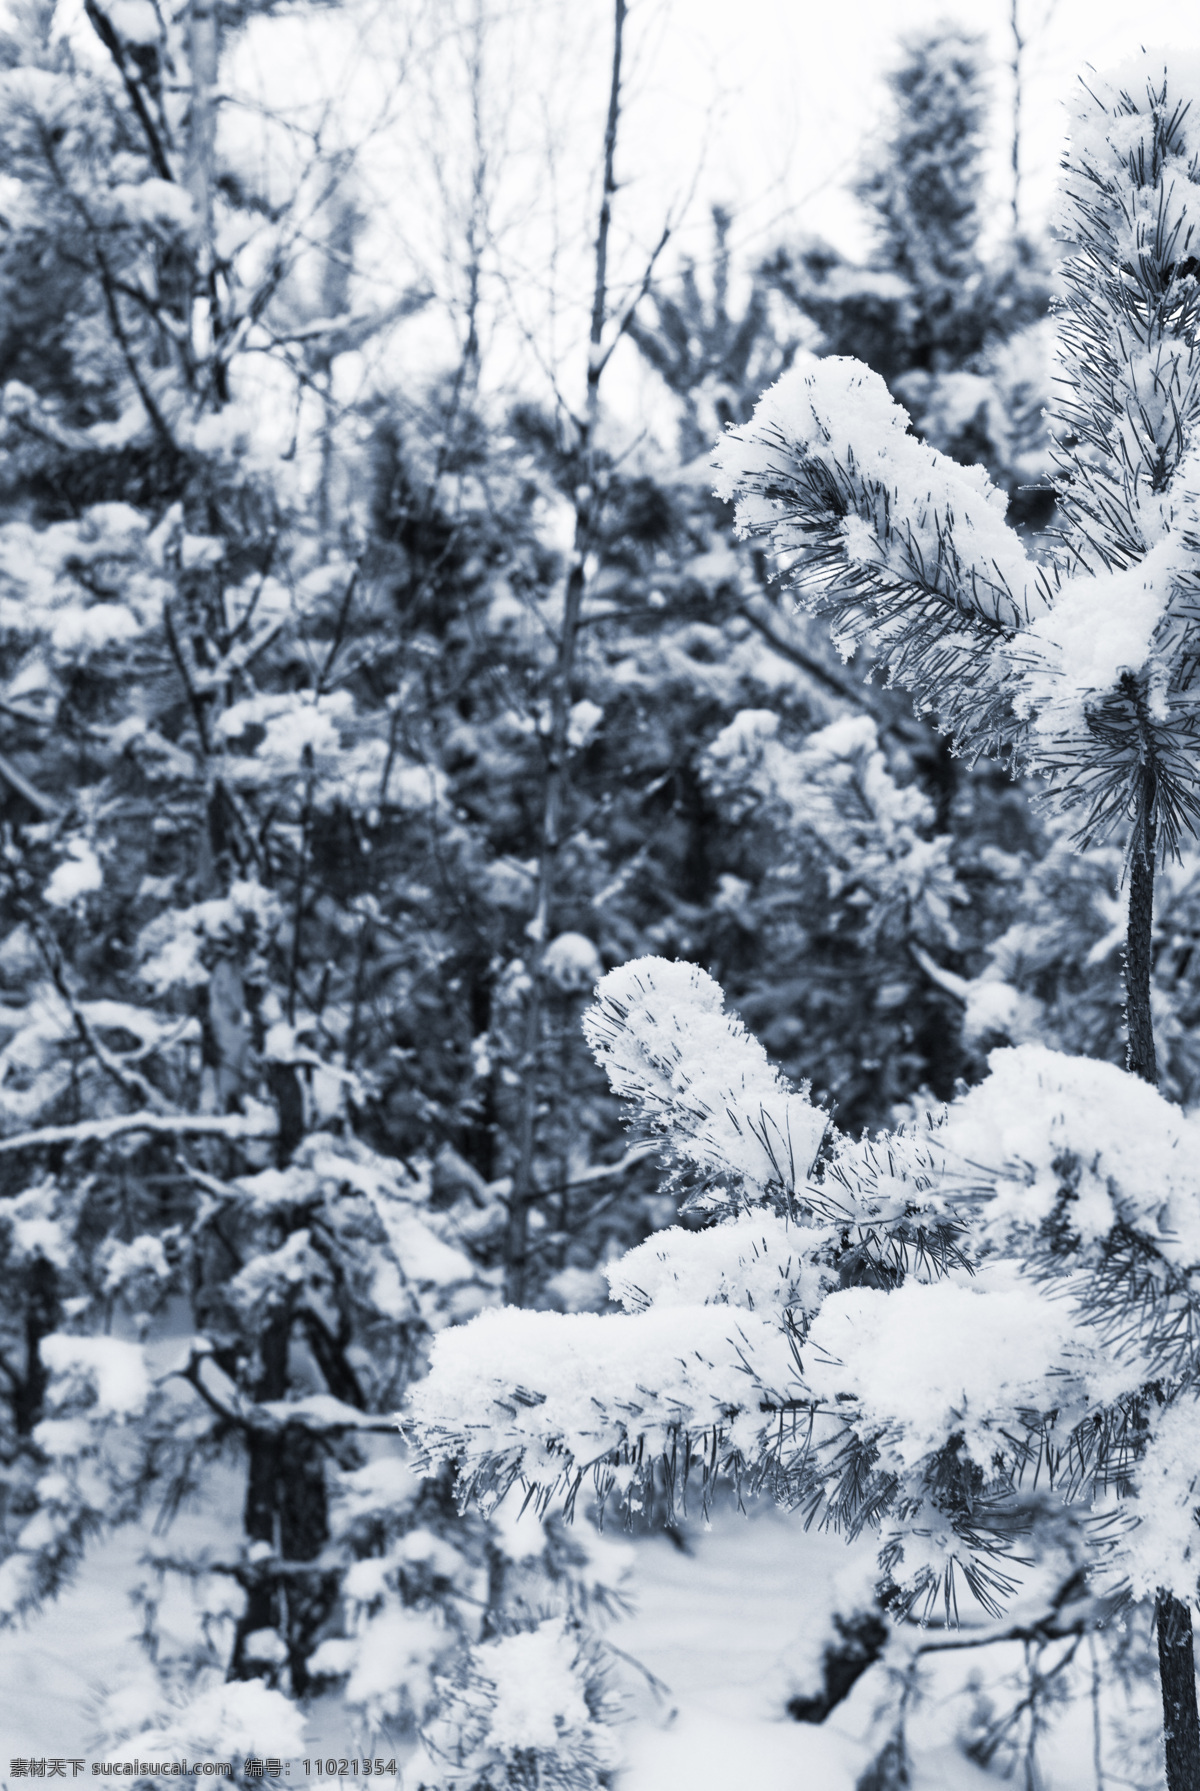 树枝 上 雪花 冬季 冬天 雪景 美丽风景 景色 美景 积雪 雪地 森林 树木 山水风景 风景图片